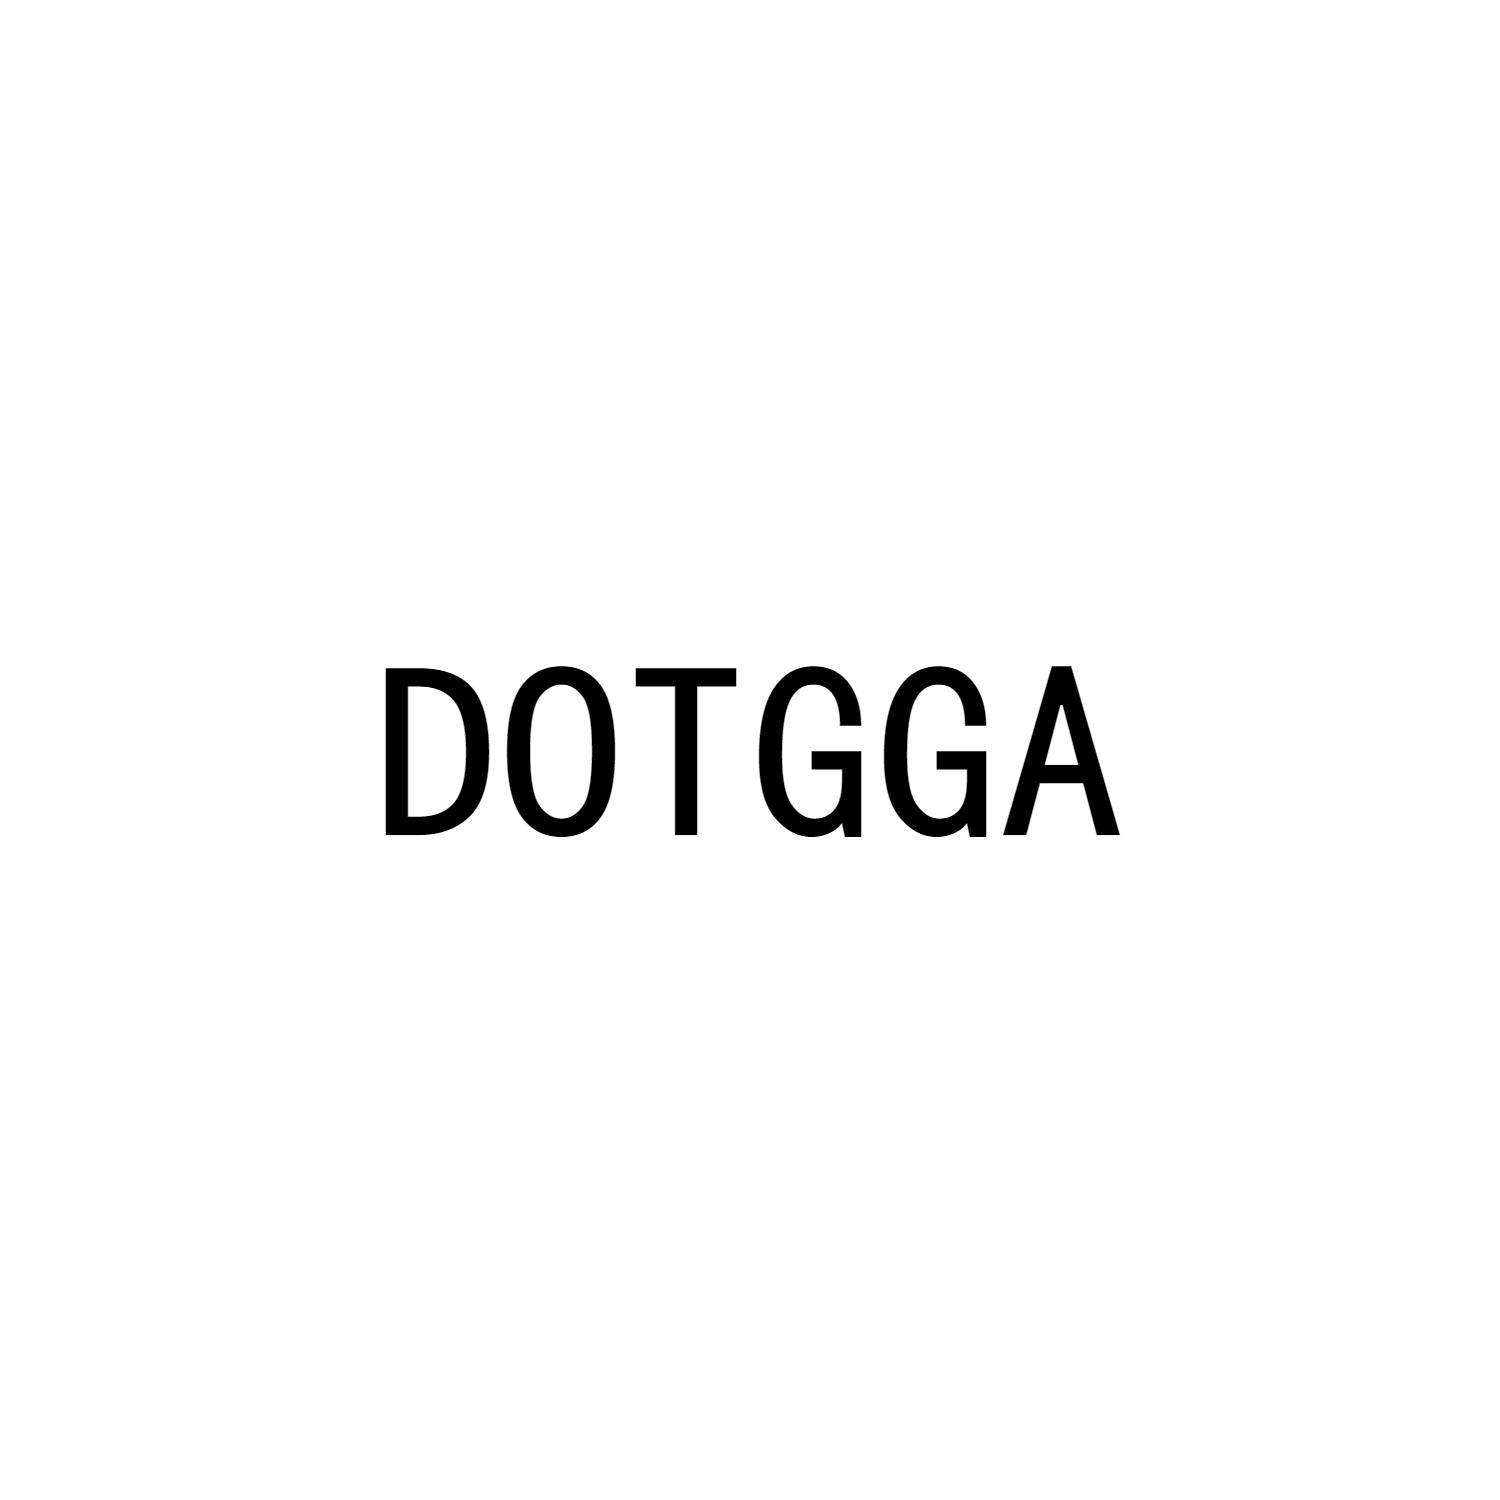 DOTGGA